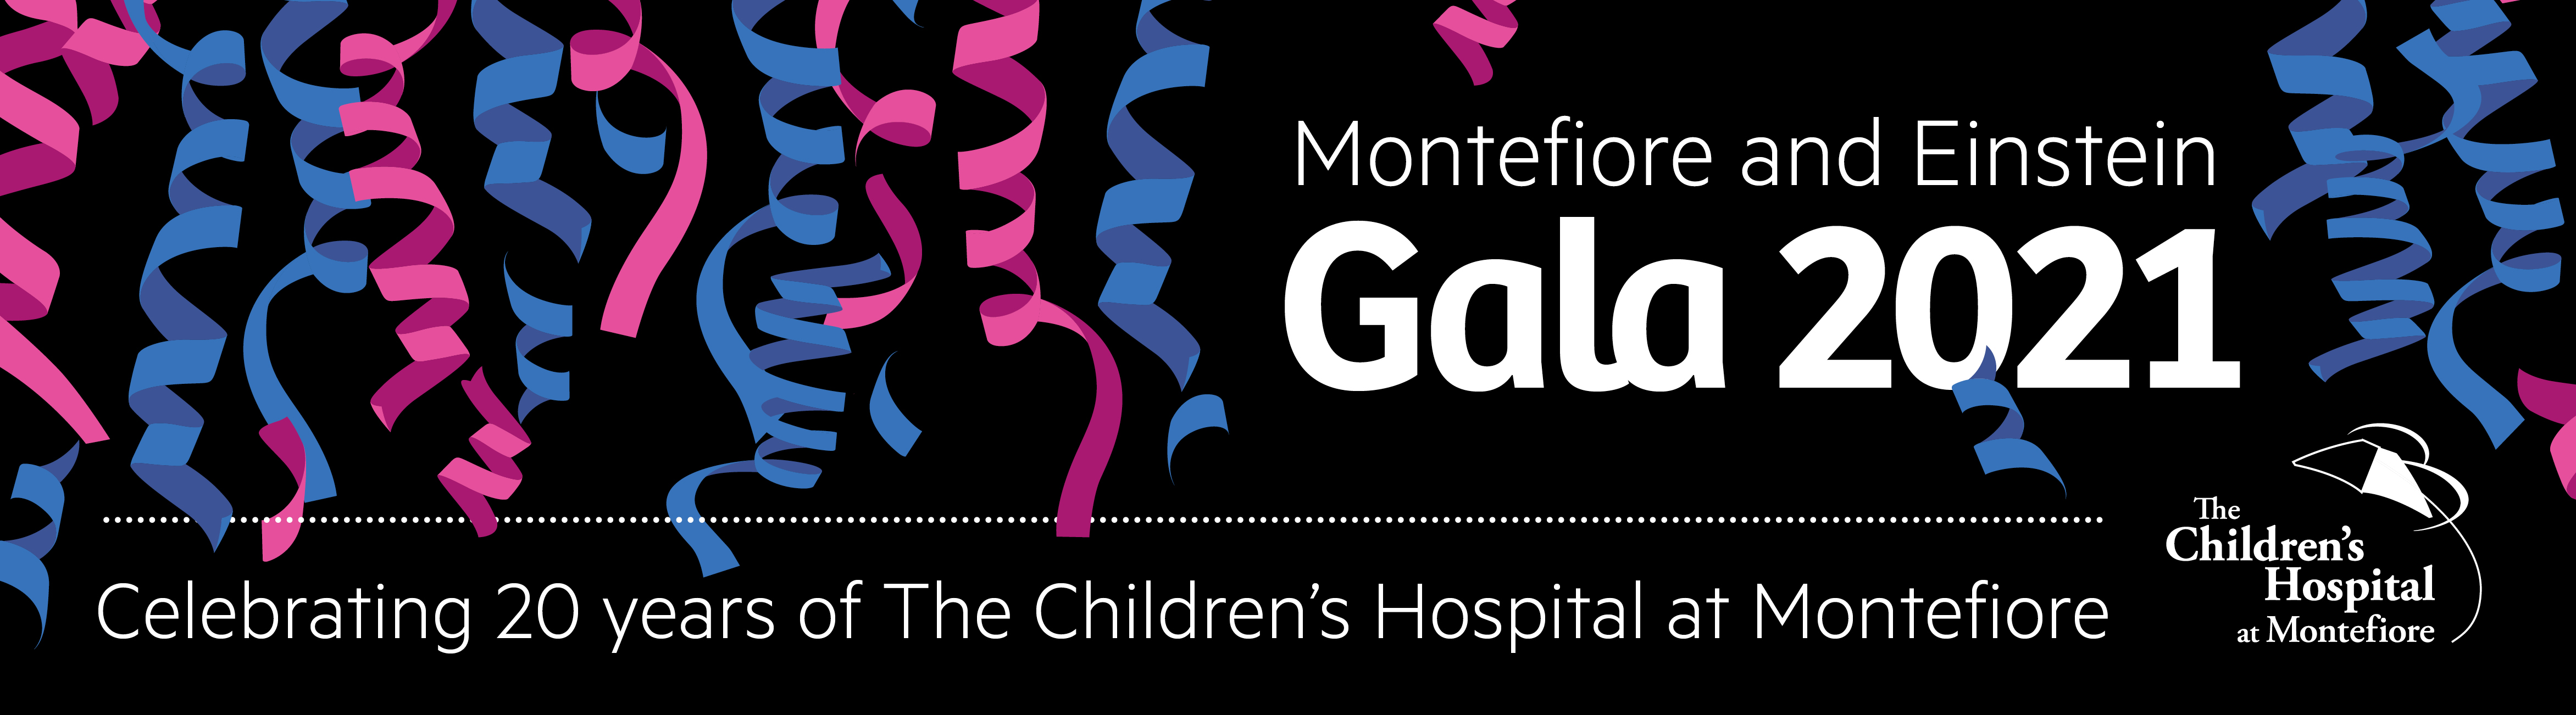 Support Montefiore Health System Montefiore and Einstein Gala 2021